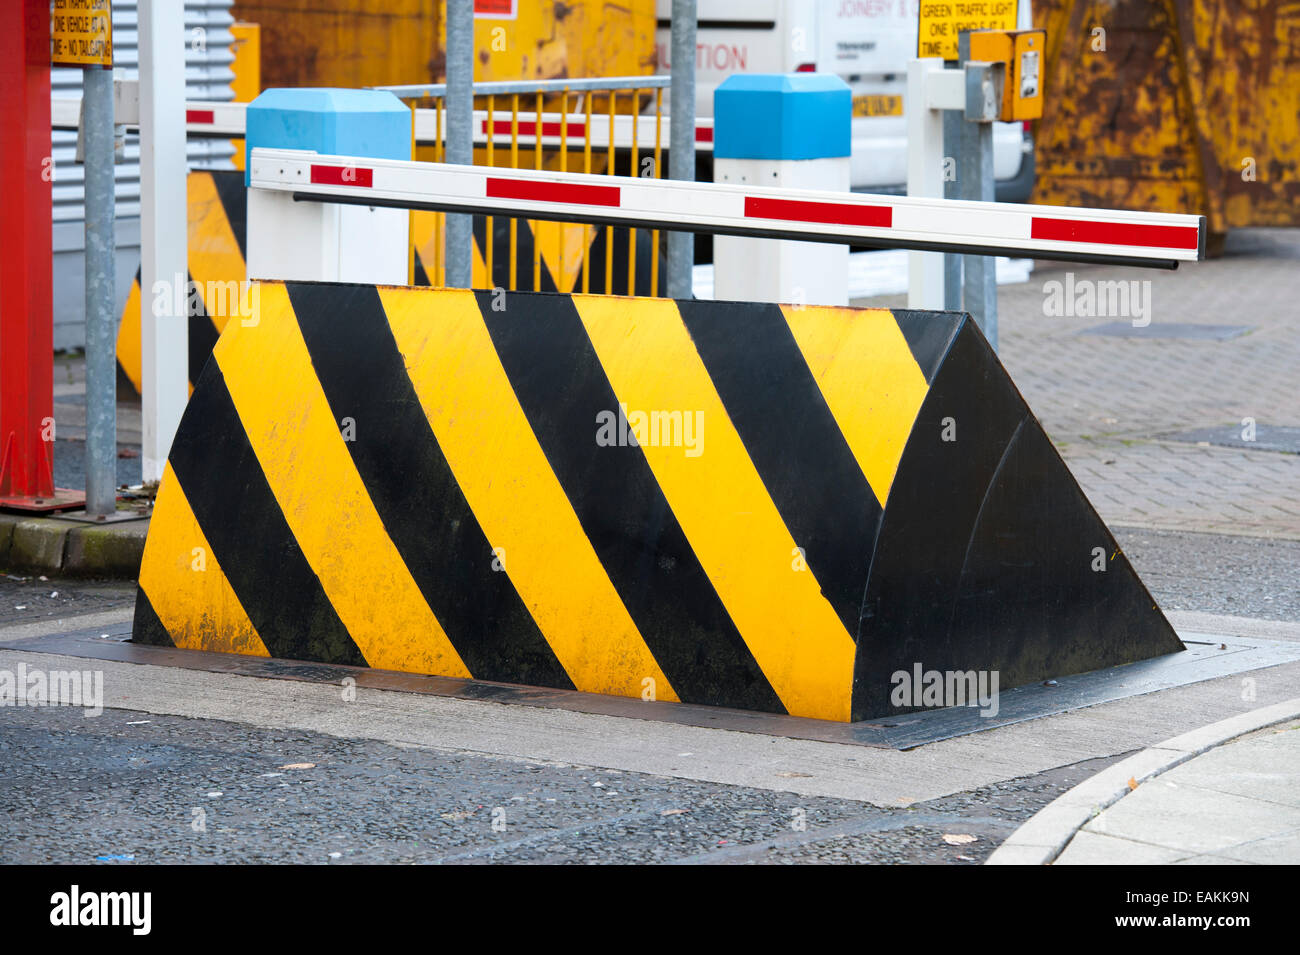 Anti-terroristes hydraulique road blocker barrière de sécurité aussi connu comme des escaliers ou d'augmentation de la freiner Banque D'Images